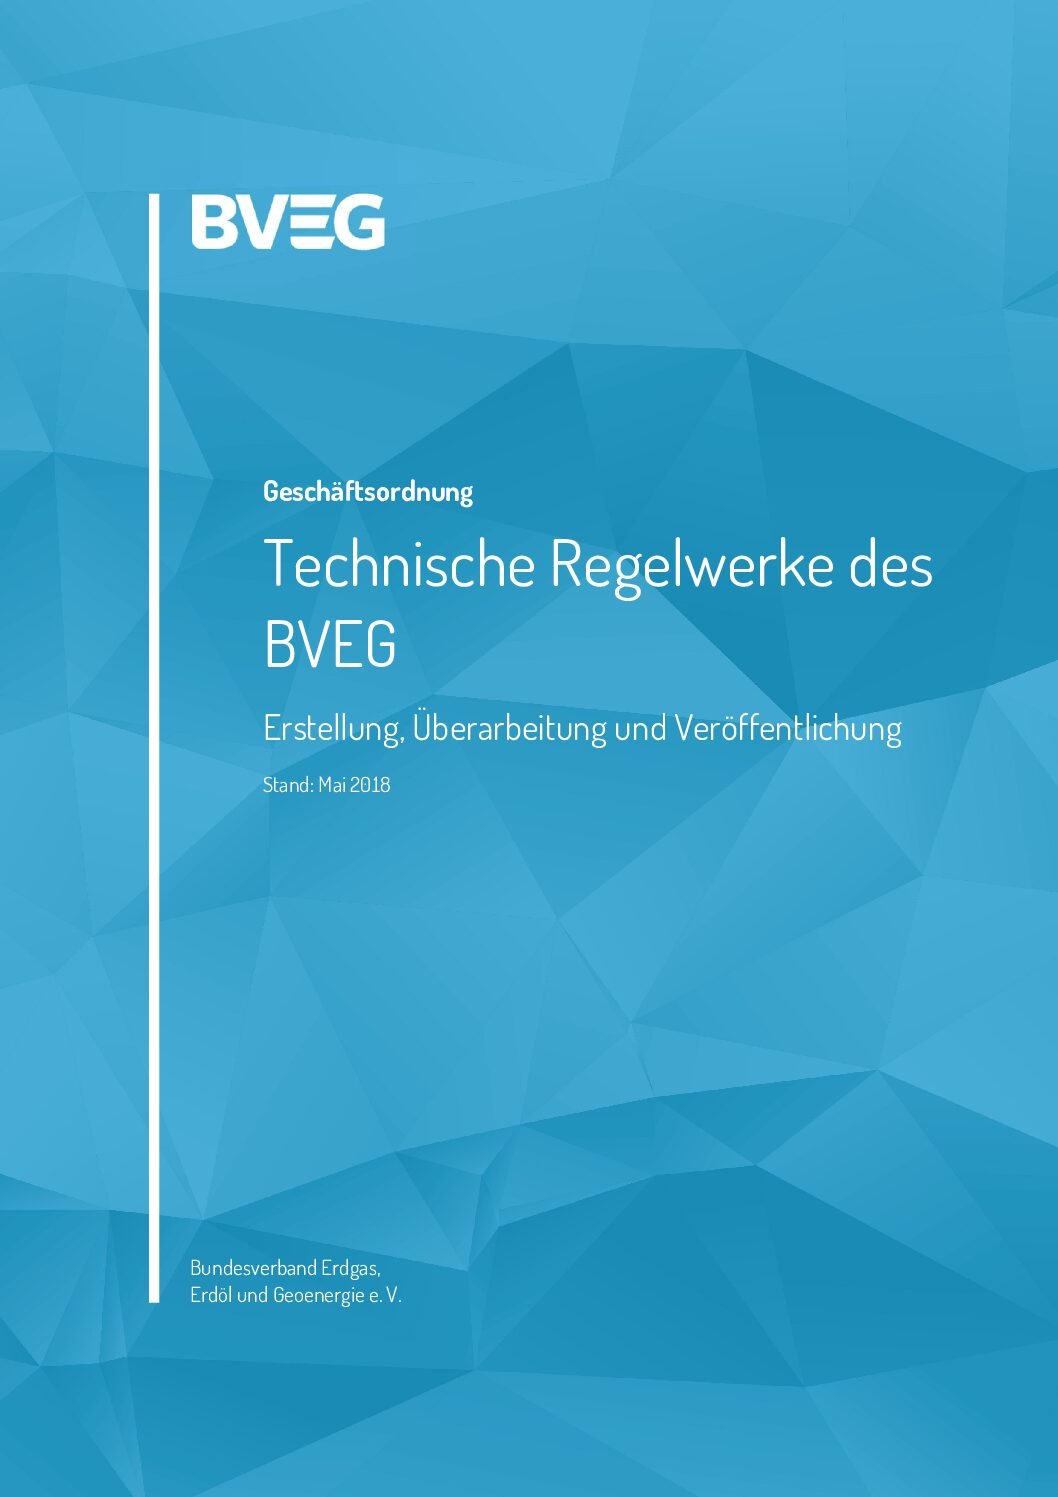 Geschäftsordnung für Technische Regelwerke des BVEG